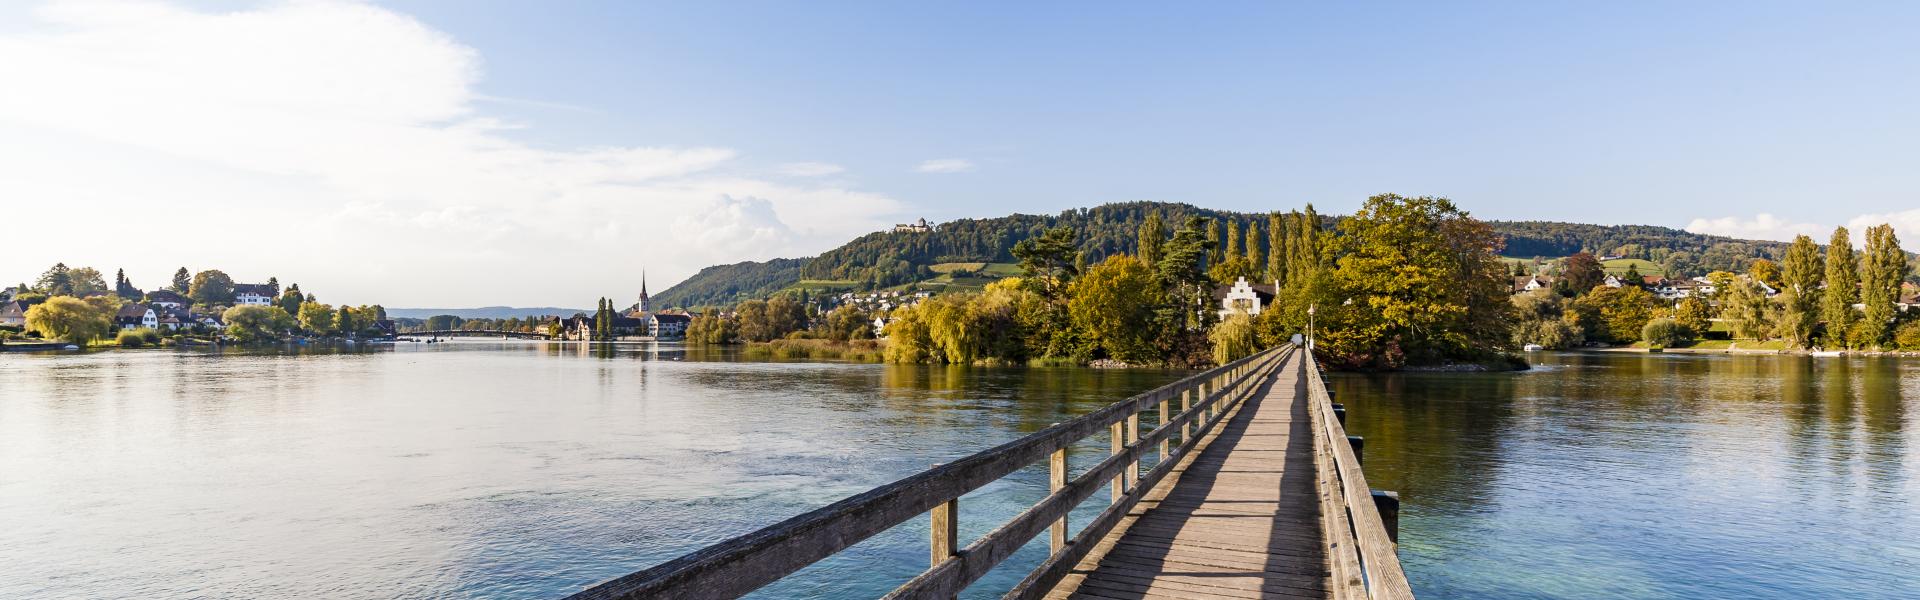 Urlaub in Bodensee-Thurgau mit Ferienwohnung oder Ferienhaus - e-domizil